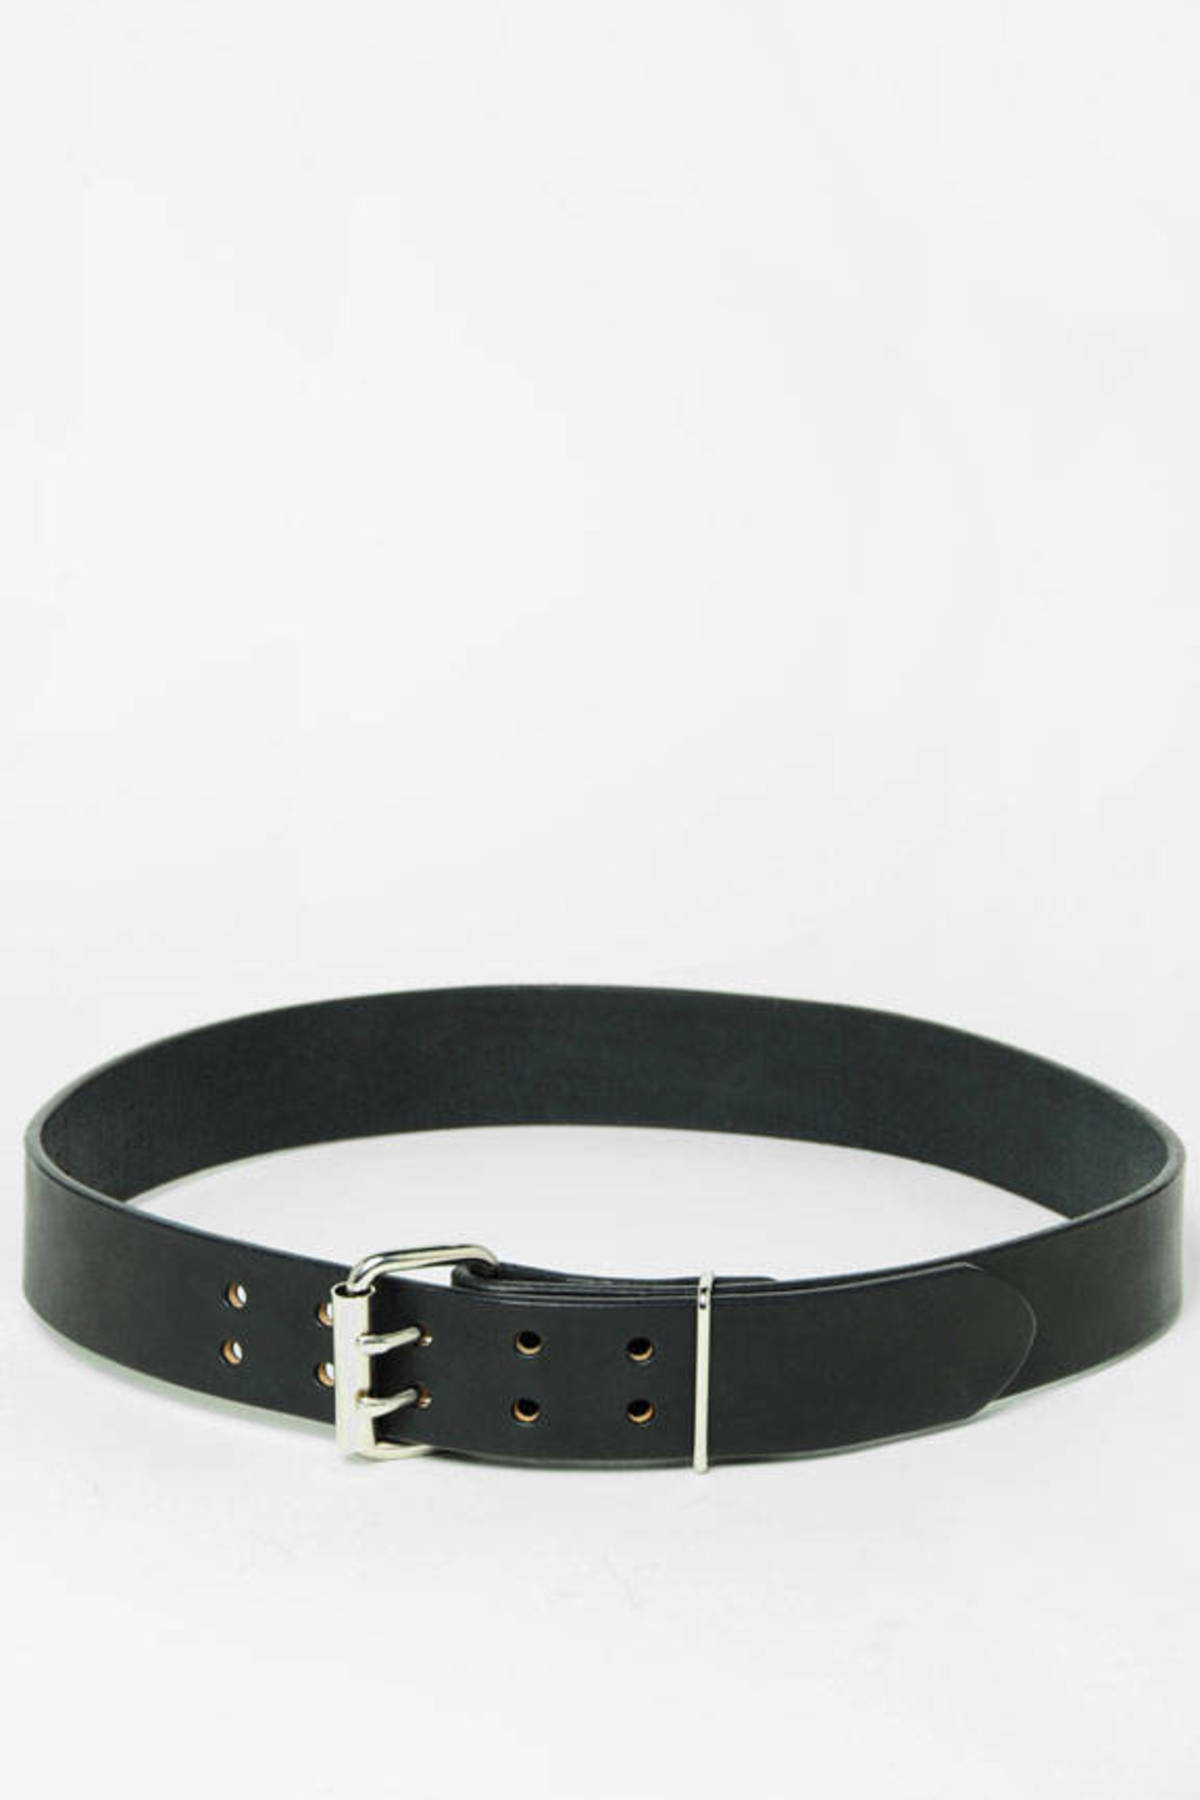 Women's Belts | Cute Black Leather Belts, Fashion Waist Belts | Tobi